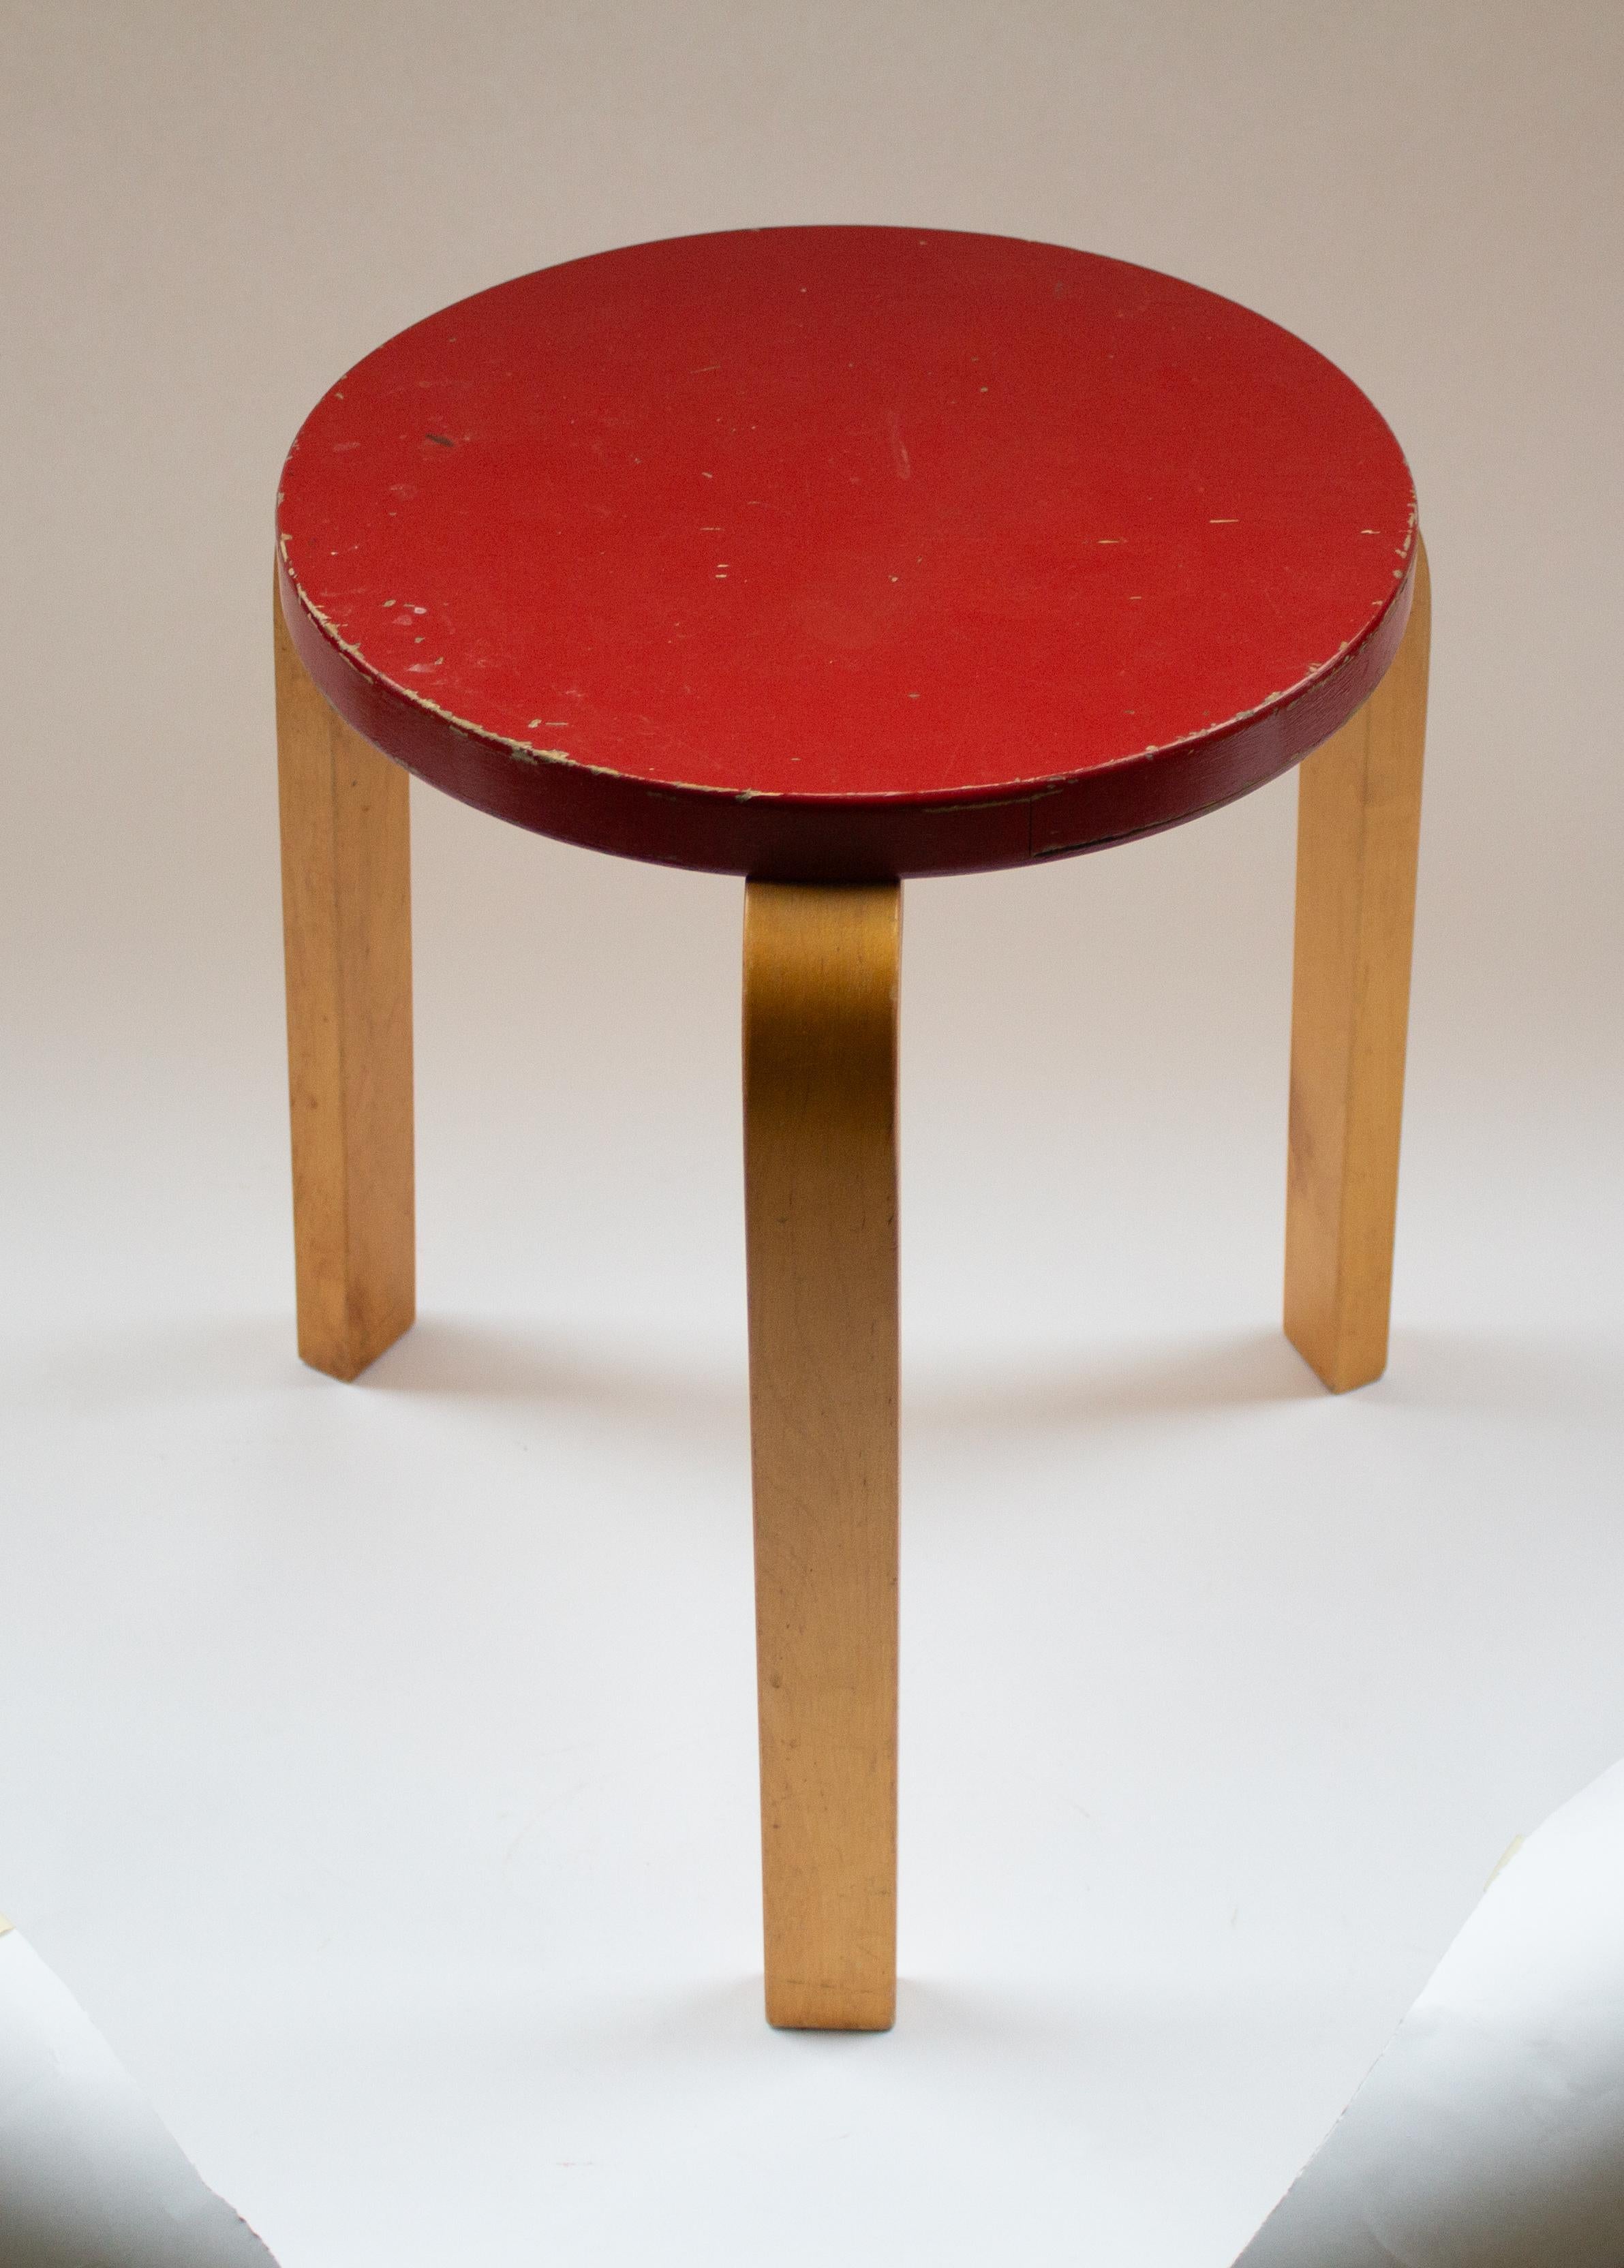 L'emblématique Tabouret 60 d'Alvar Aalto, des années 1950 d'Artek, est la quintessence du mobilier minimaliste, suffisamment polyvalent pour servir de siège, de table, de meuble de rangement ou même de surface d'exposition. Cette création